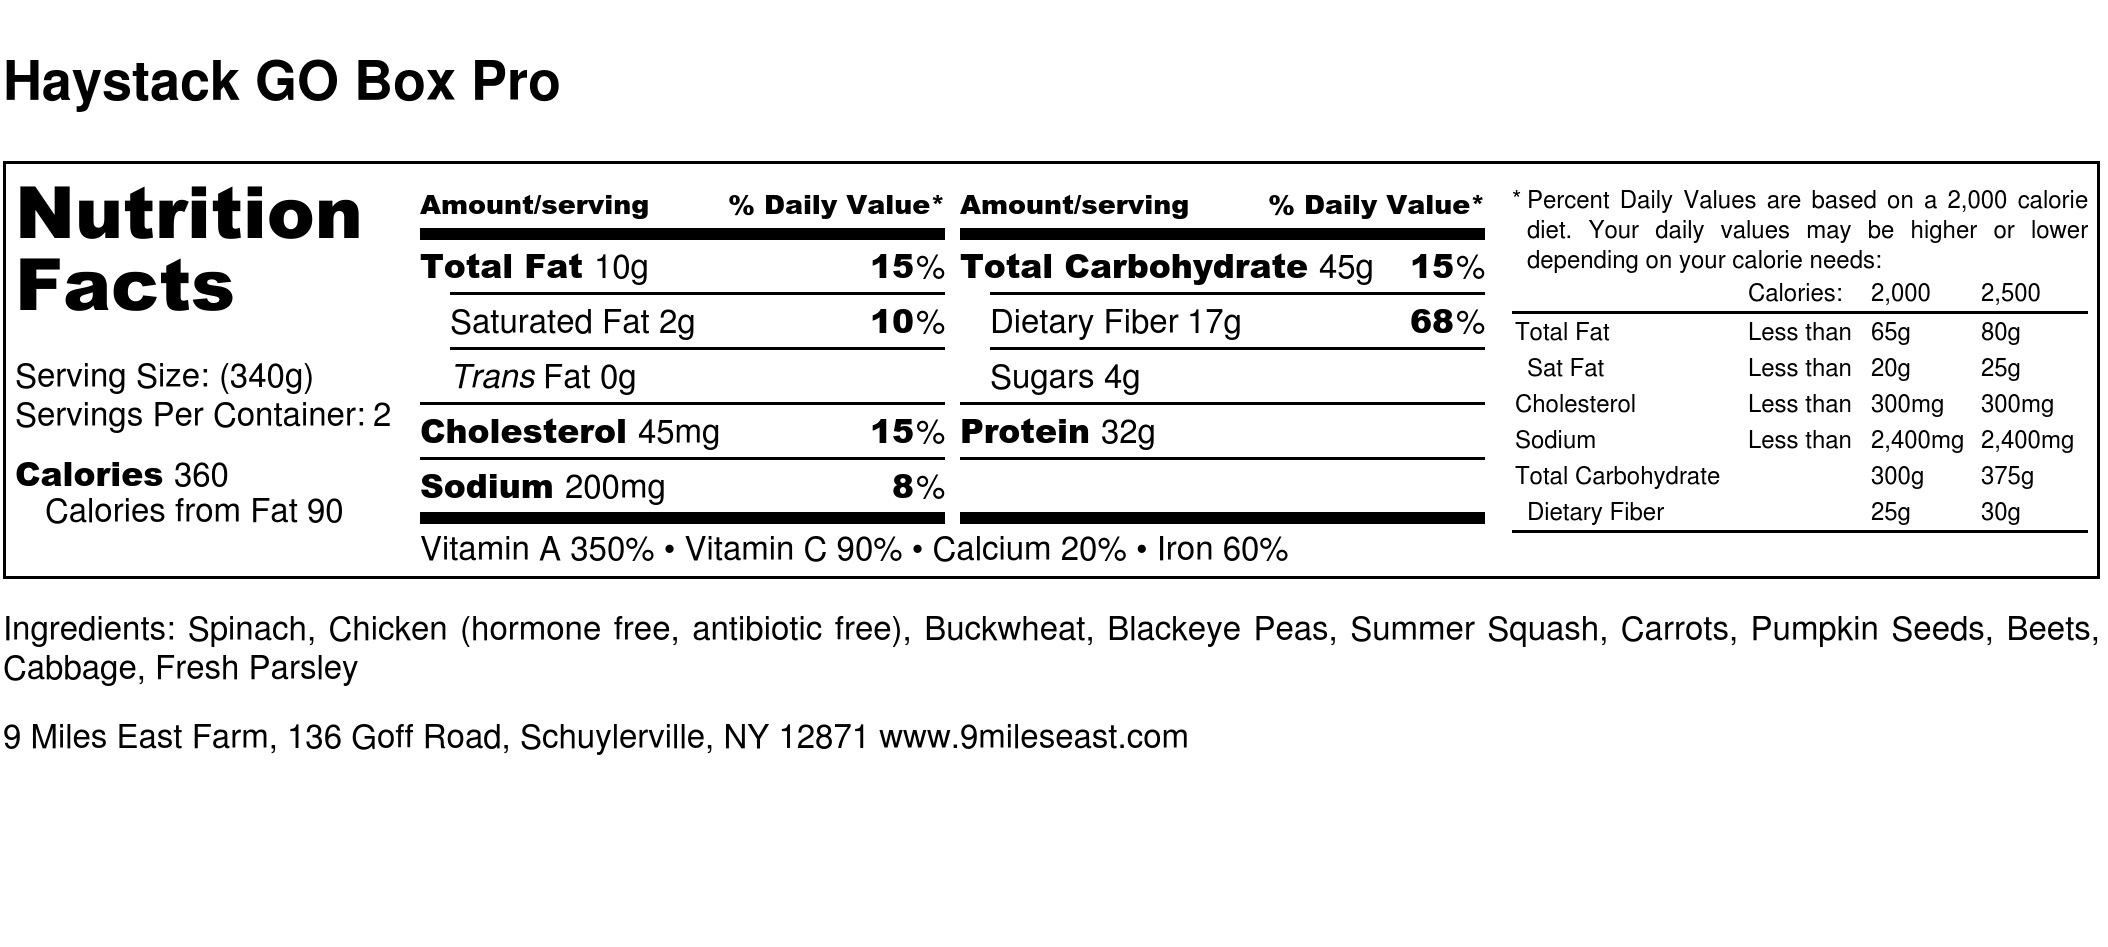 Haystack GO Box Pro - Nutrition Label.jpg